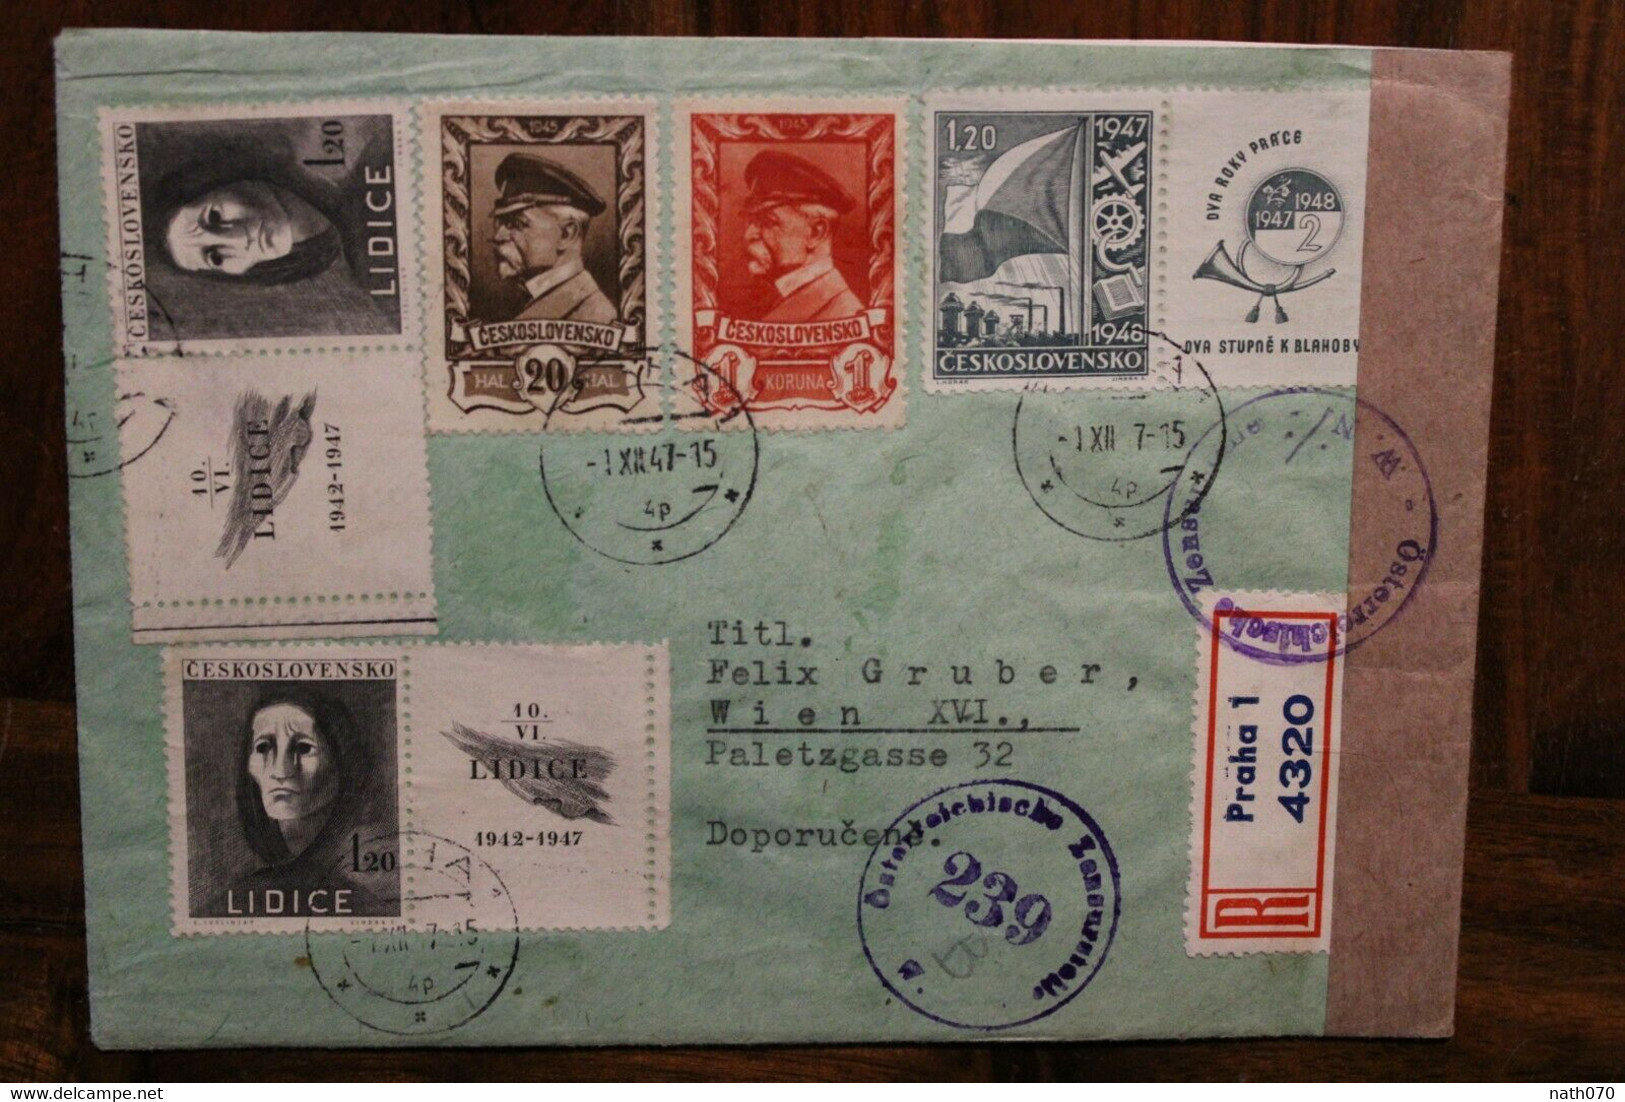 1947 Tschechoslowakei Cover Air Mail Letadlem Luftpost Zensur Osterreich Censure Alliés Einschreiben Recommandé - Briefe U. Dokumente